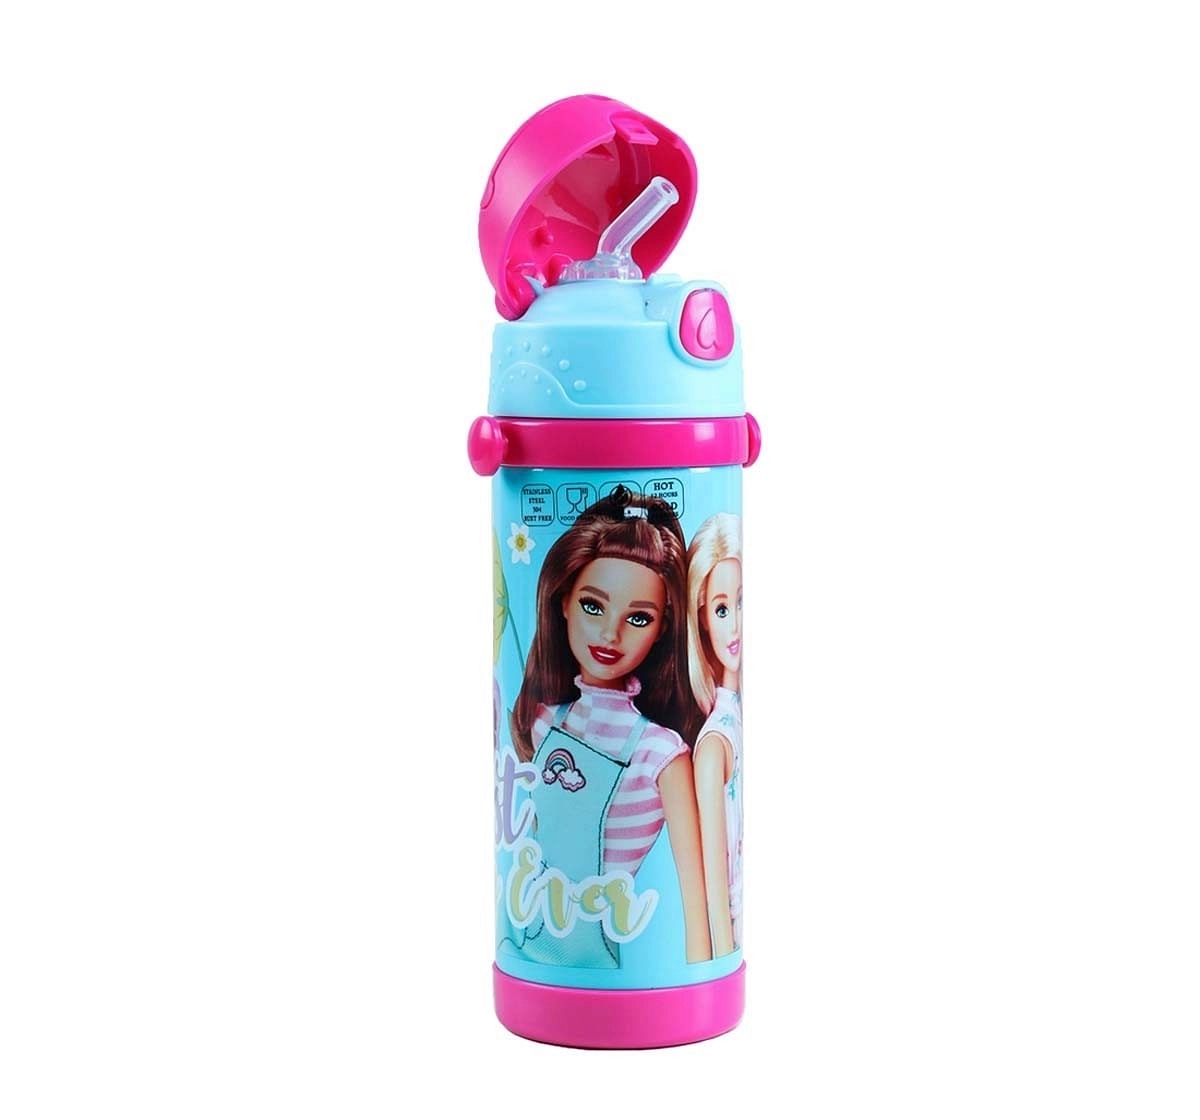 Barbie Best Day Steel Inner Water Bottle 350 Ml for Age 3Y+